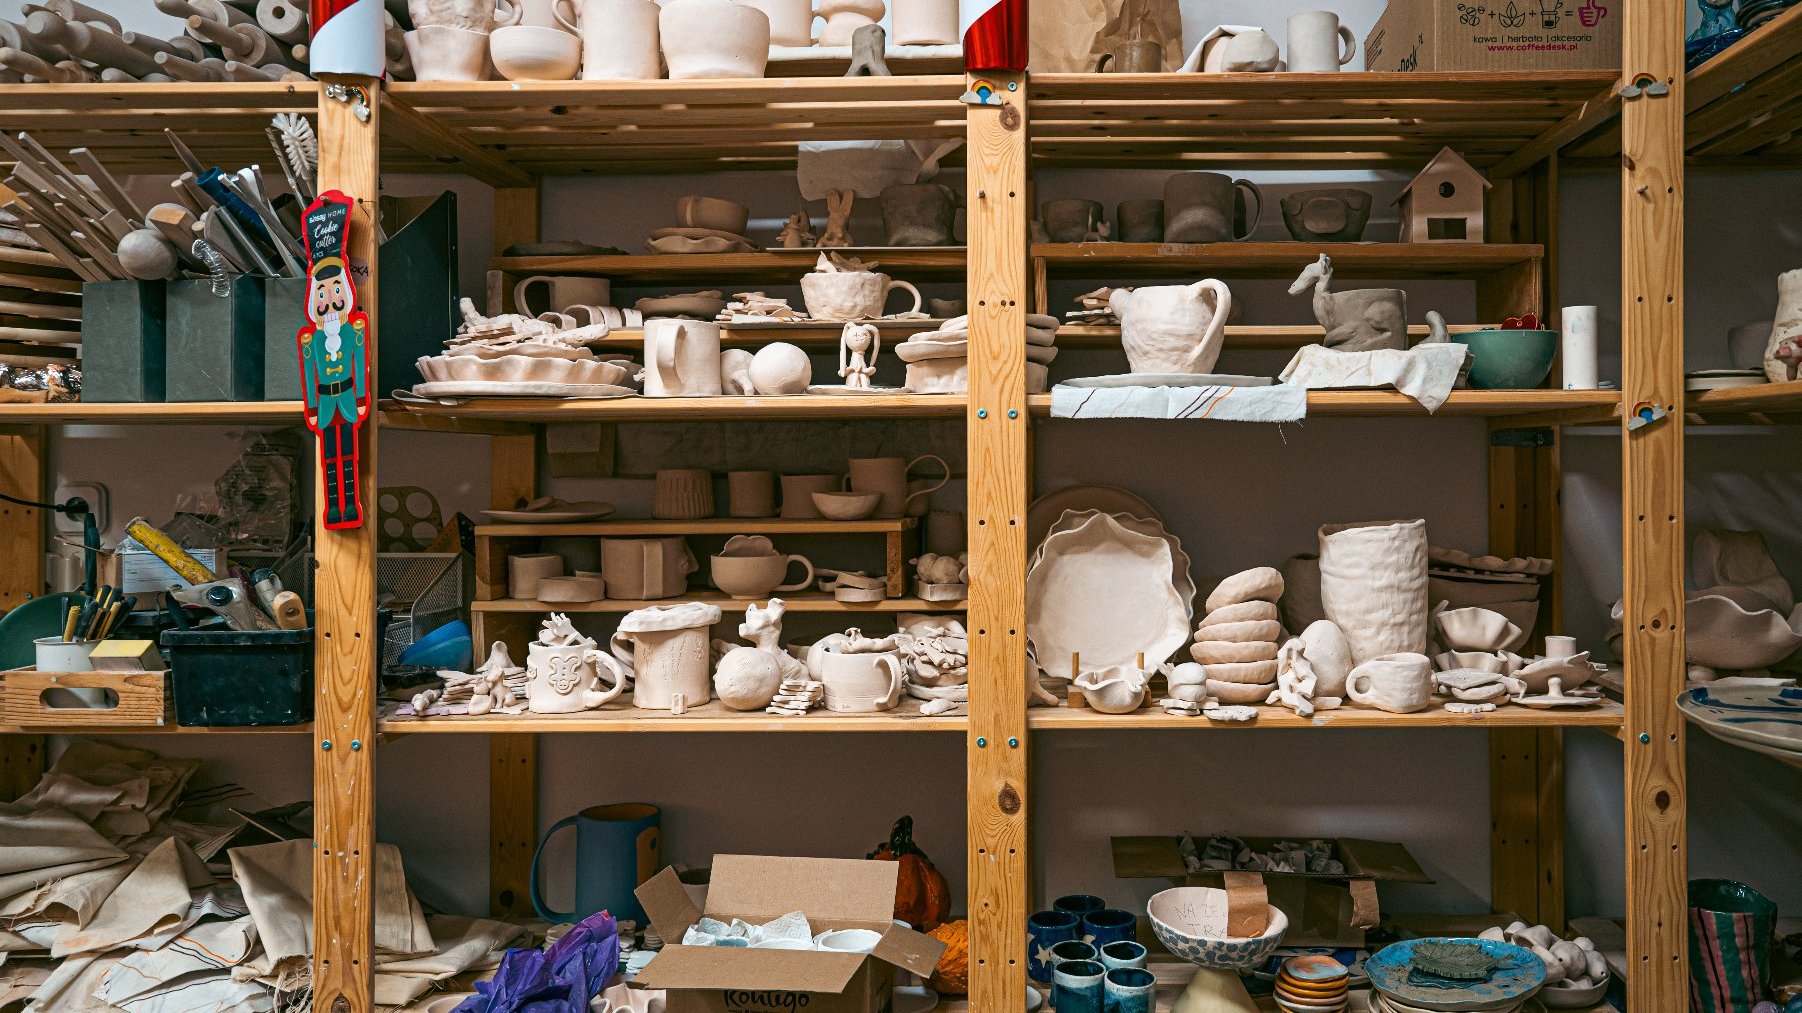 Zdjęcie przedstawia półki, na których widać mnóstwo przedmiotów z gliny - figurek, talerzy, kubków, wazonów.